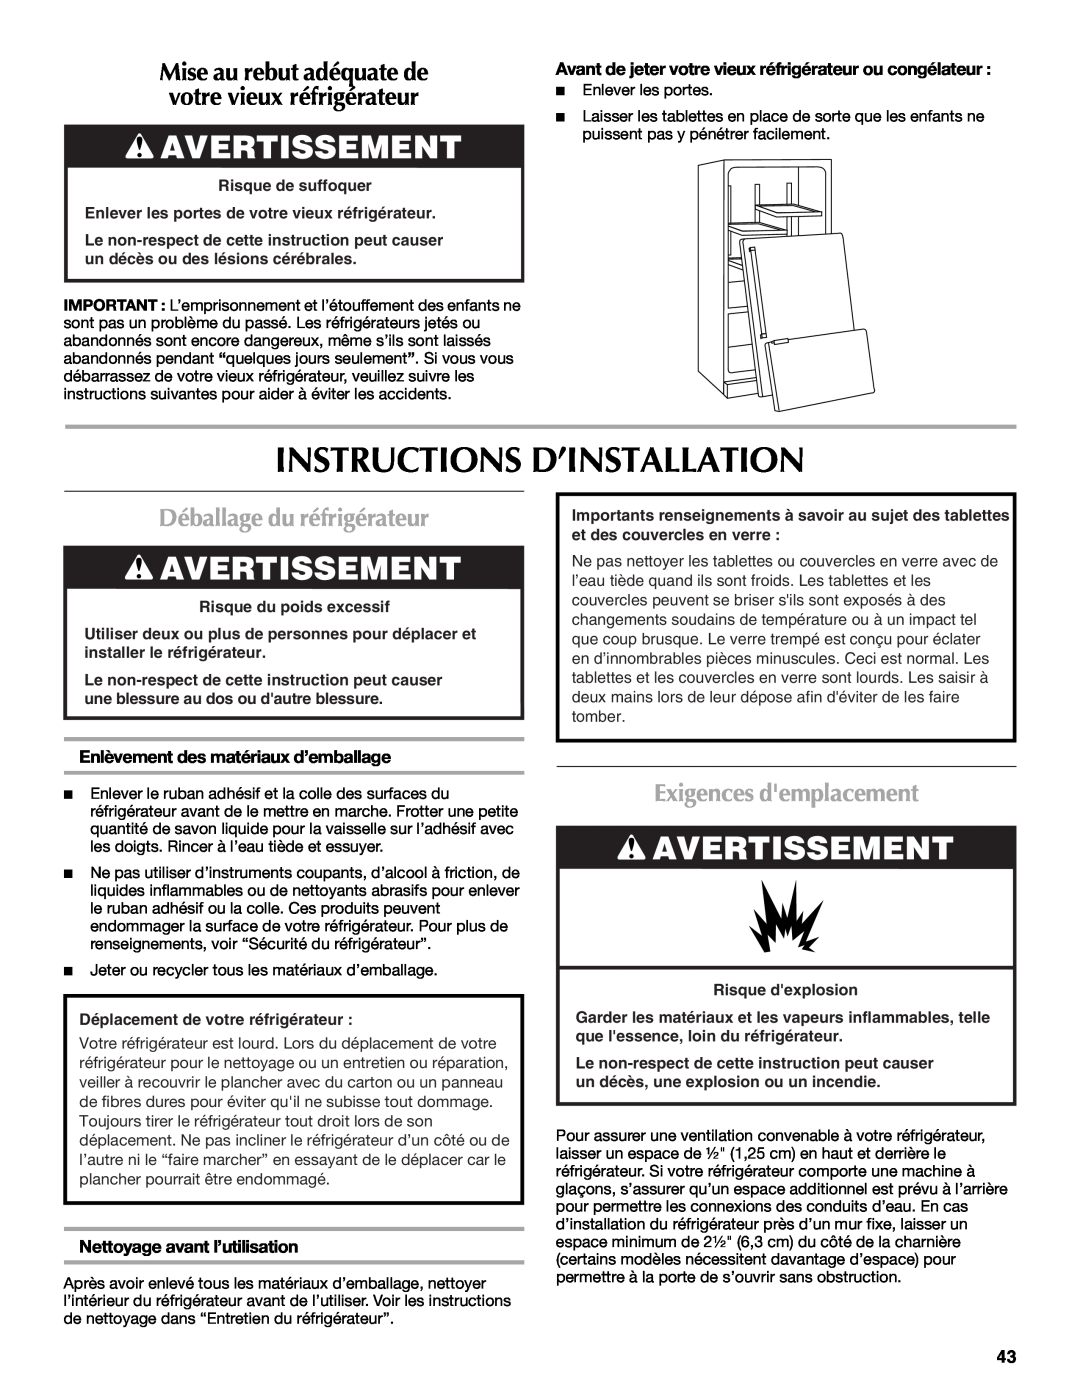 Maytag MFD2562VEW Instructions D’Installation, Avertissement, Déballage du réfrigérateur, Exigences demplacement 